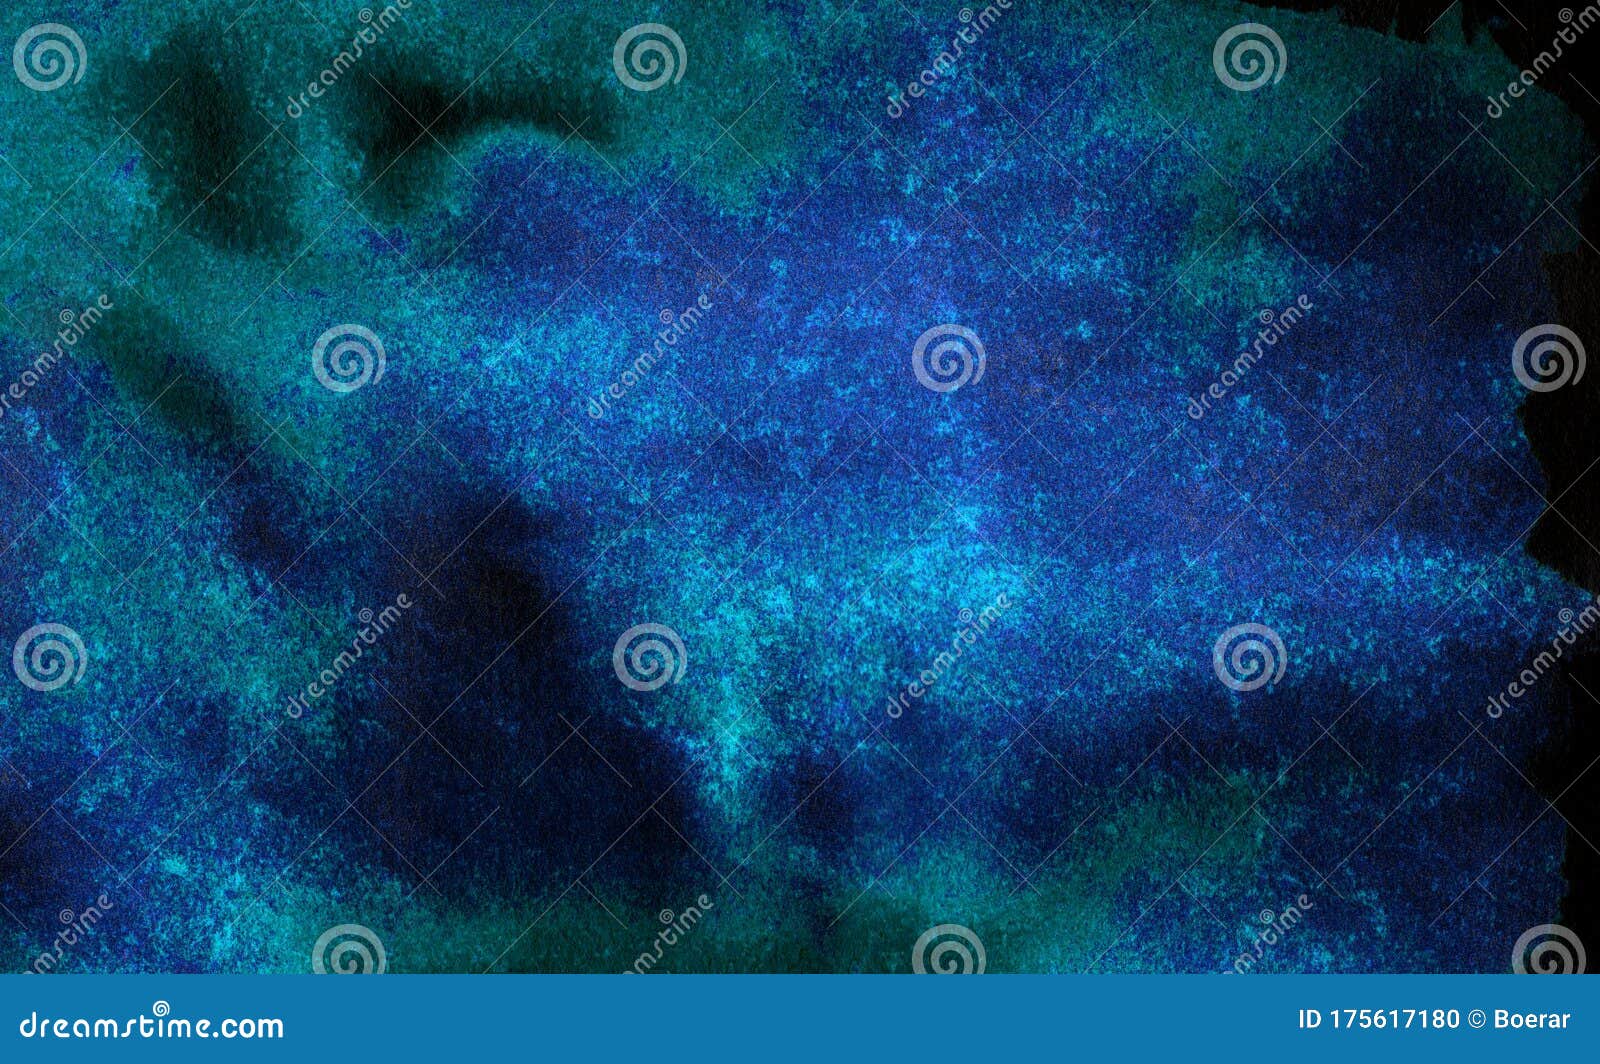 黑纸上现代创意深暗发光的蓝色霓虹水彩插图闪电夜空与雷声背景库存照片 图片包括有设计 五颜六色